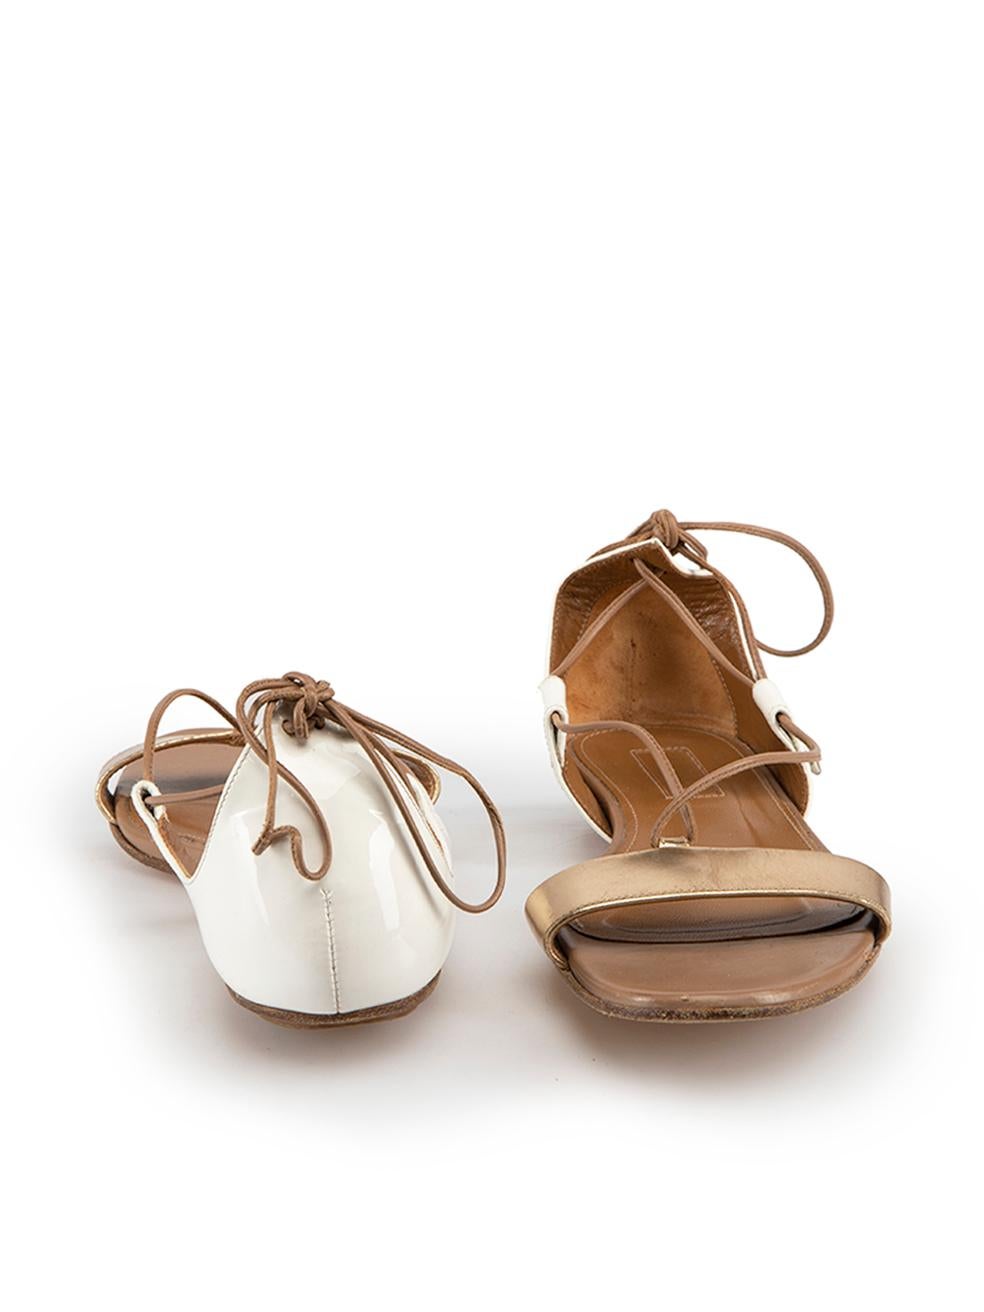 Aquazzura White Patent Leather Strappy Sandals Size EU 36 In Good Condition In London, GB